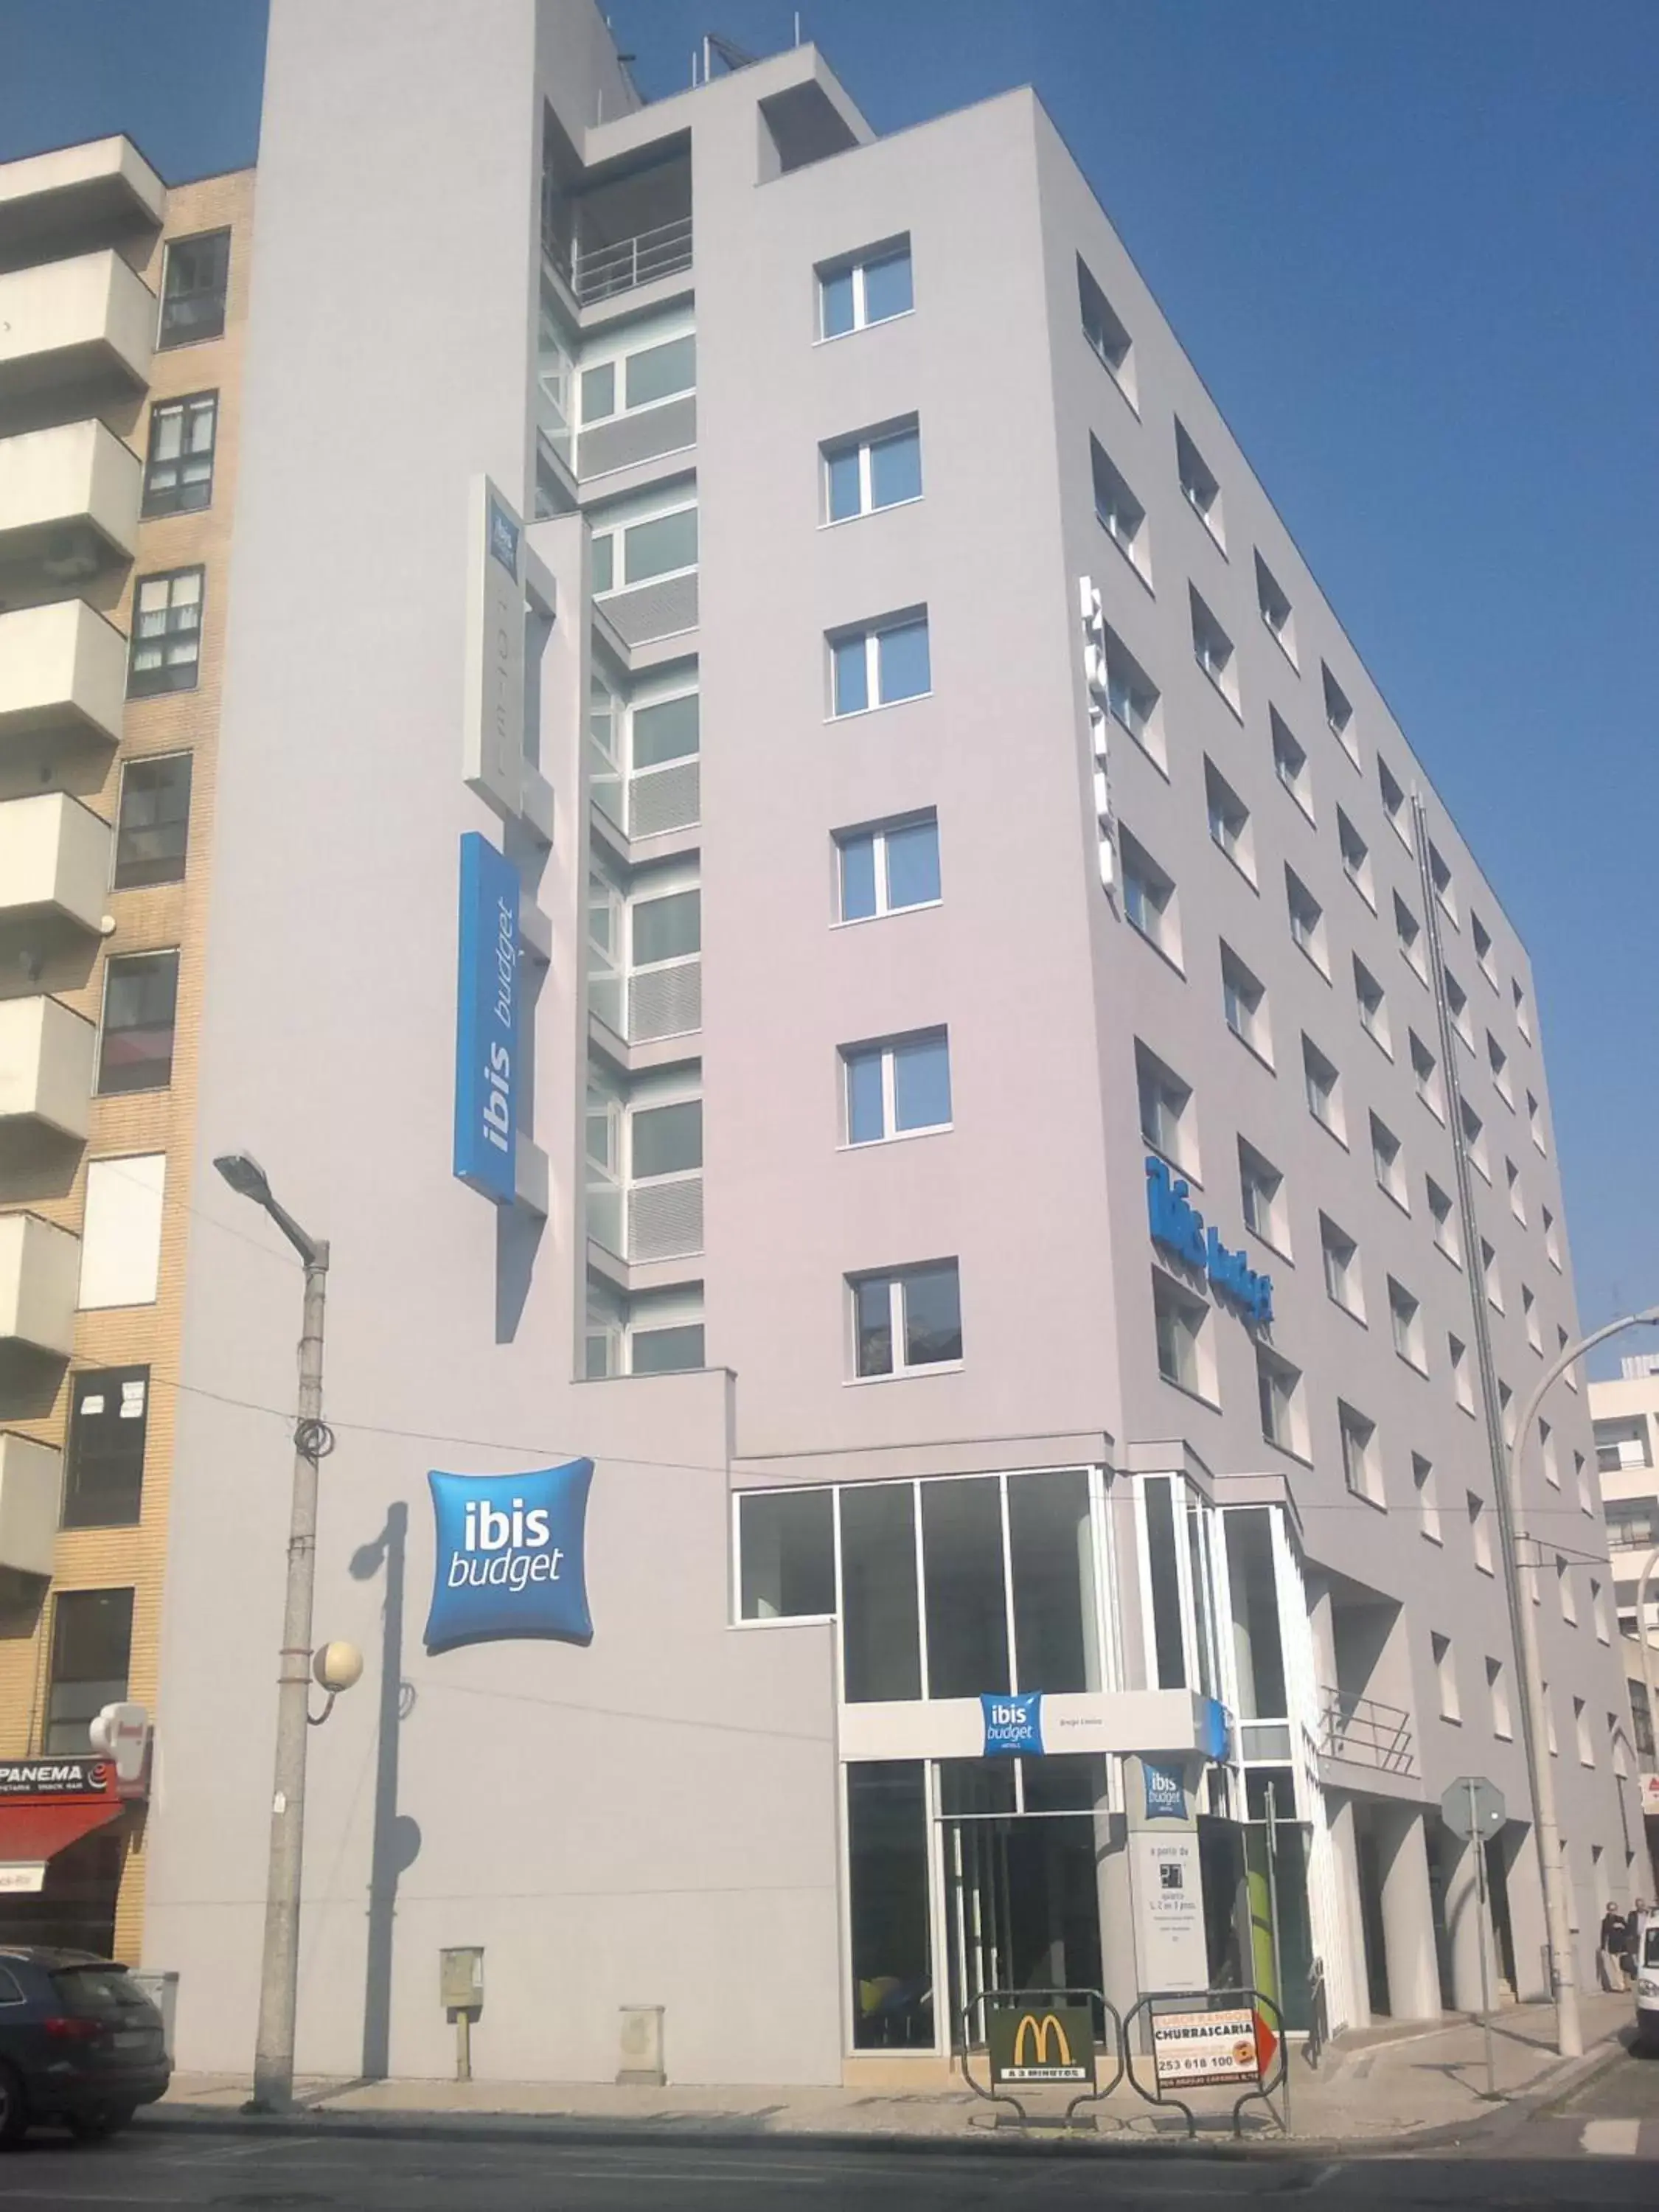 Facade/entrance, Property Building in Ibis Budget Braga Centro